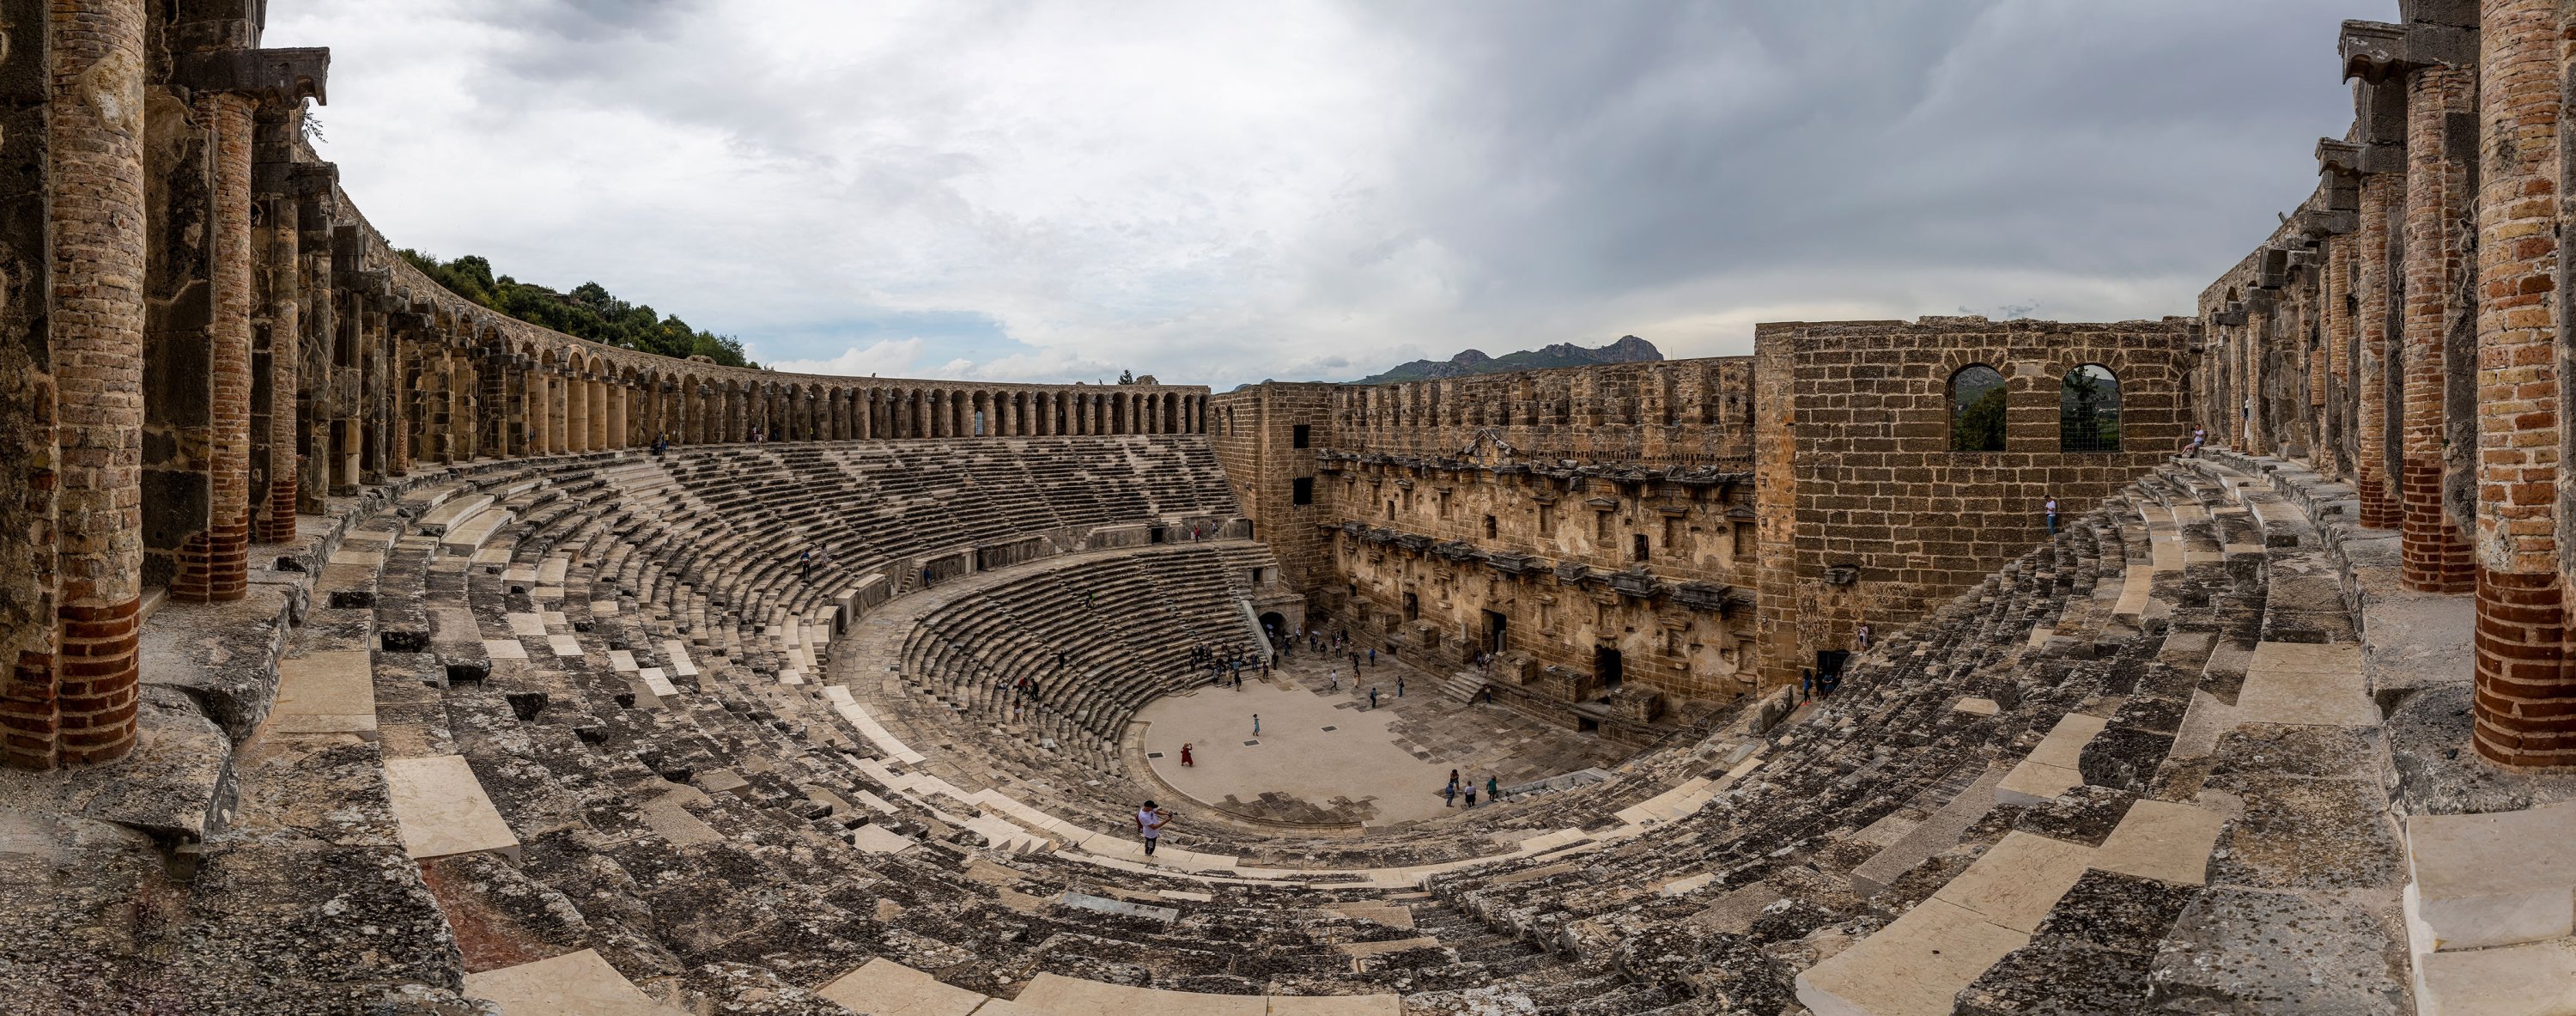 Dibangun pada tahun 155 oleh Arsitek Yunani Zenon, Aspendos dikenal sebagai teater kuno terpelihara terbaik yang menyediakan tempat duduk untuk 7.000 orang.  (Foto Shutterstock)